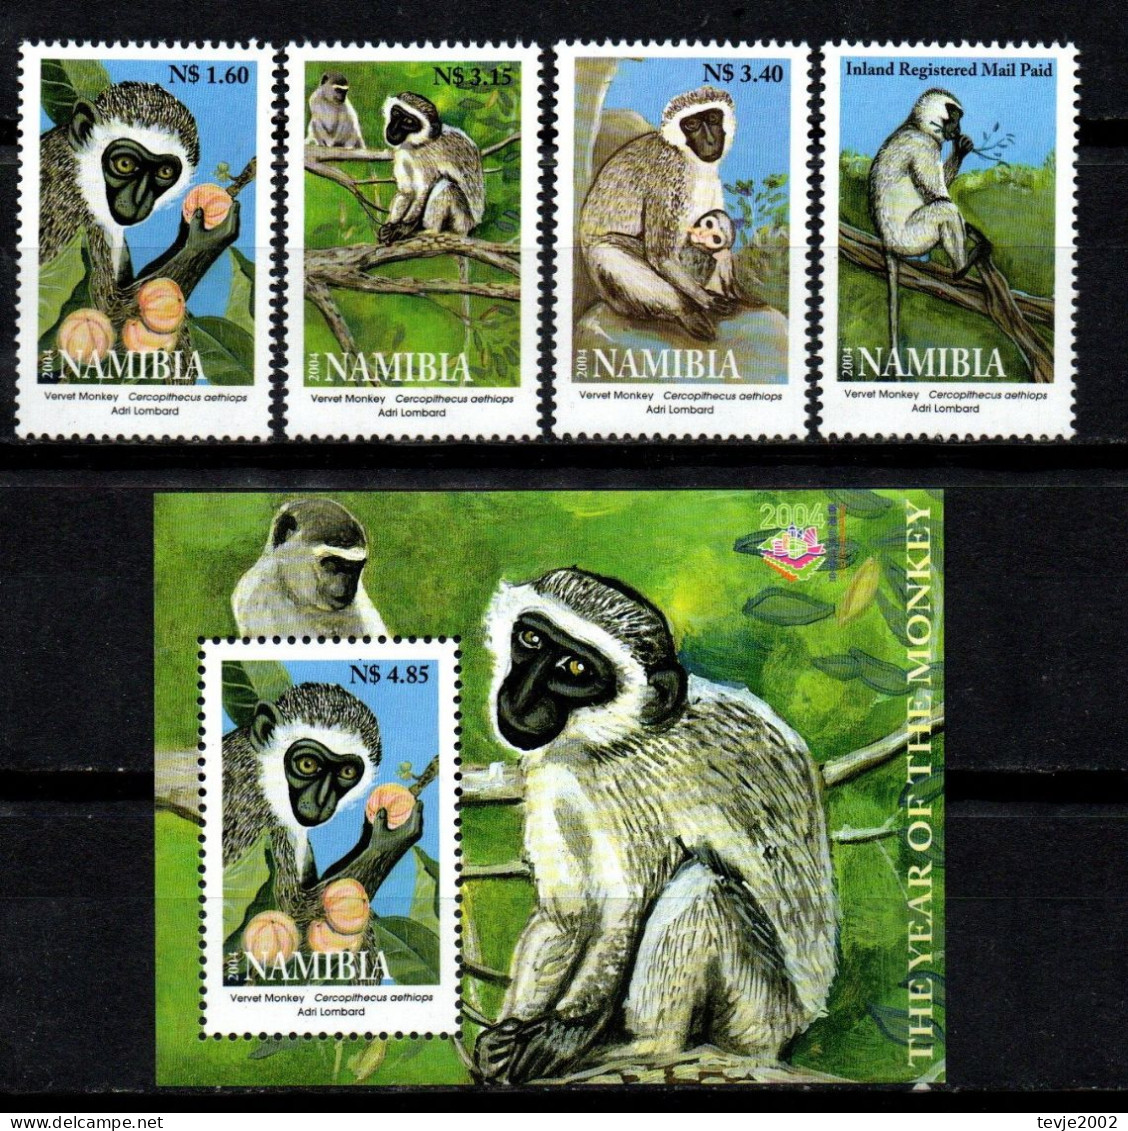 Namibia 2004 - Mi.Nr. 1115 - 1118 + Block 59 - Postfrisch MNH - Tiere Animals Affen Monkeys - Singes